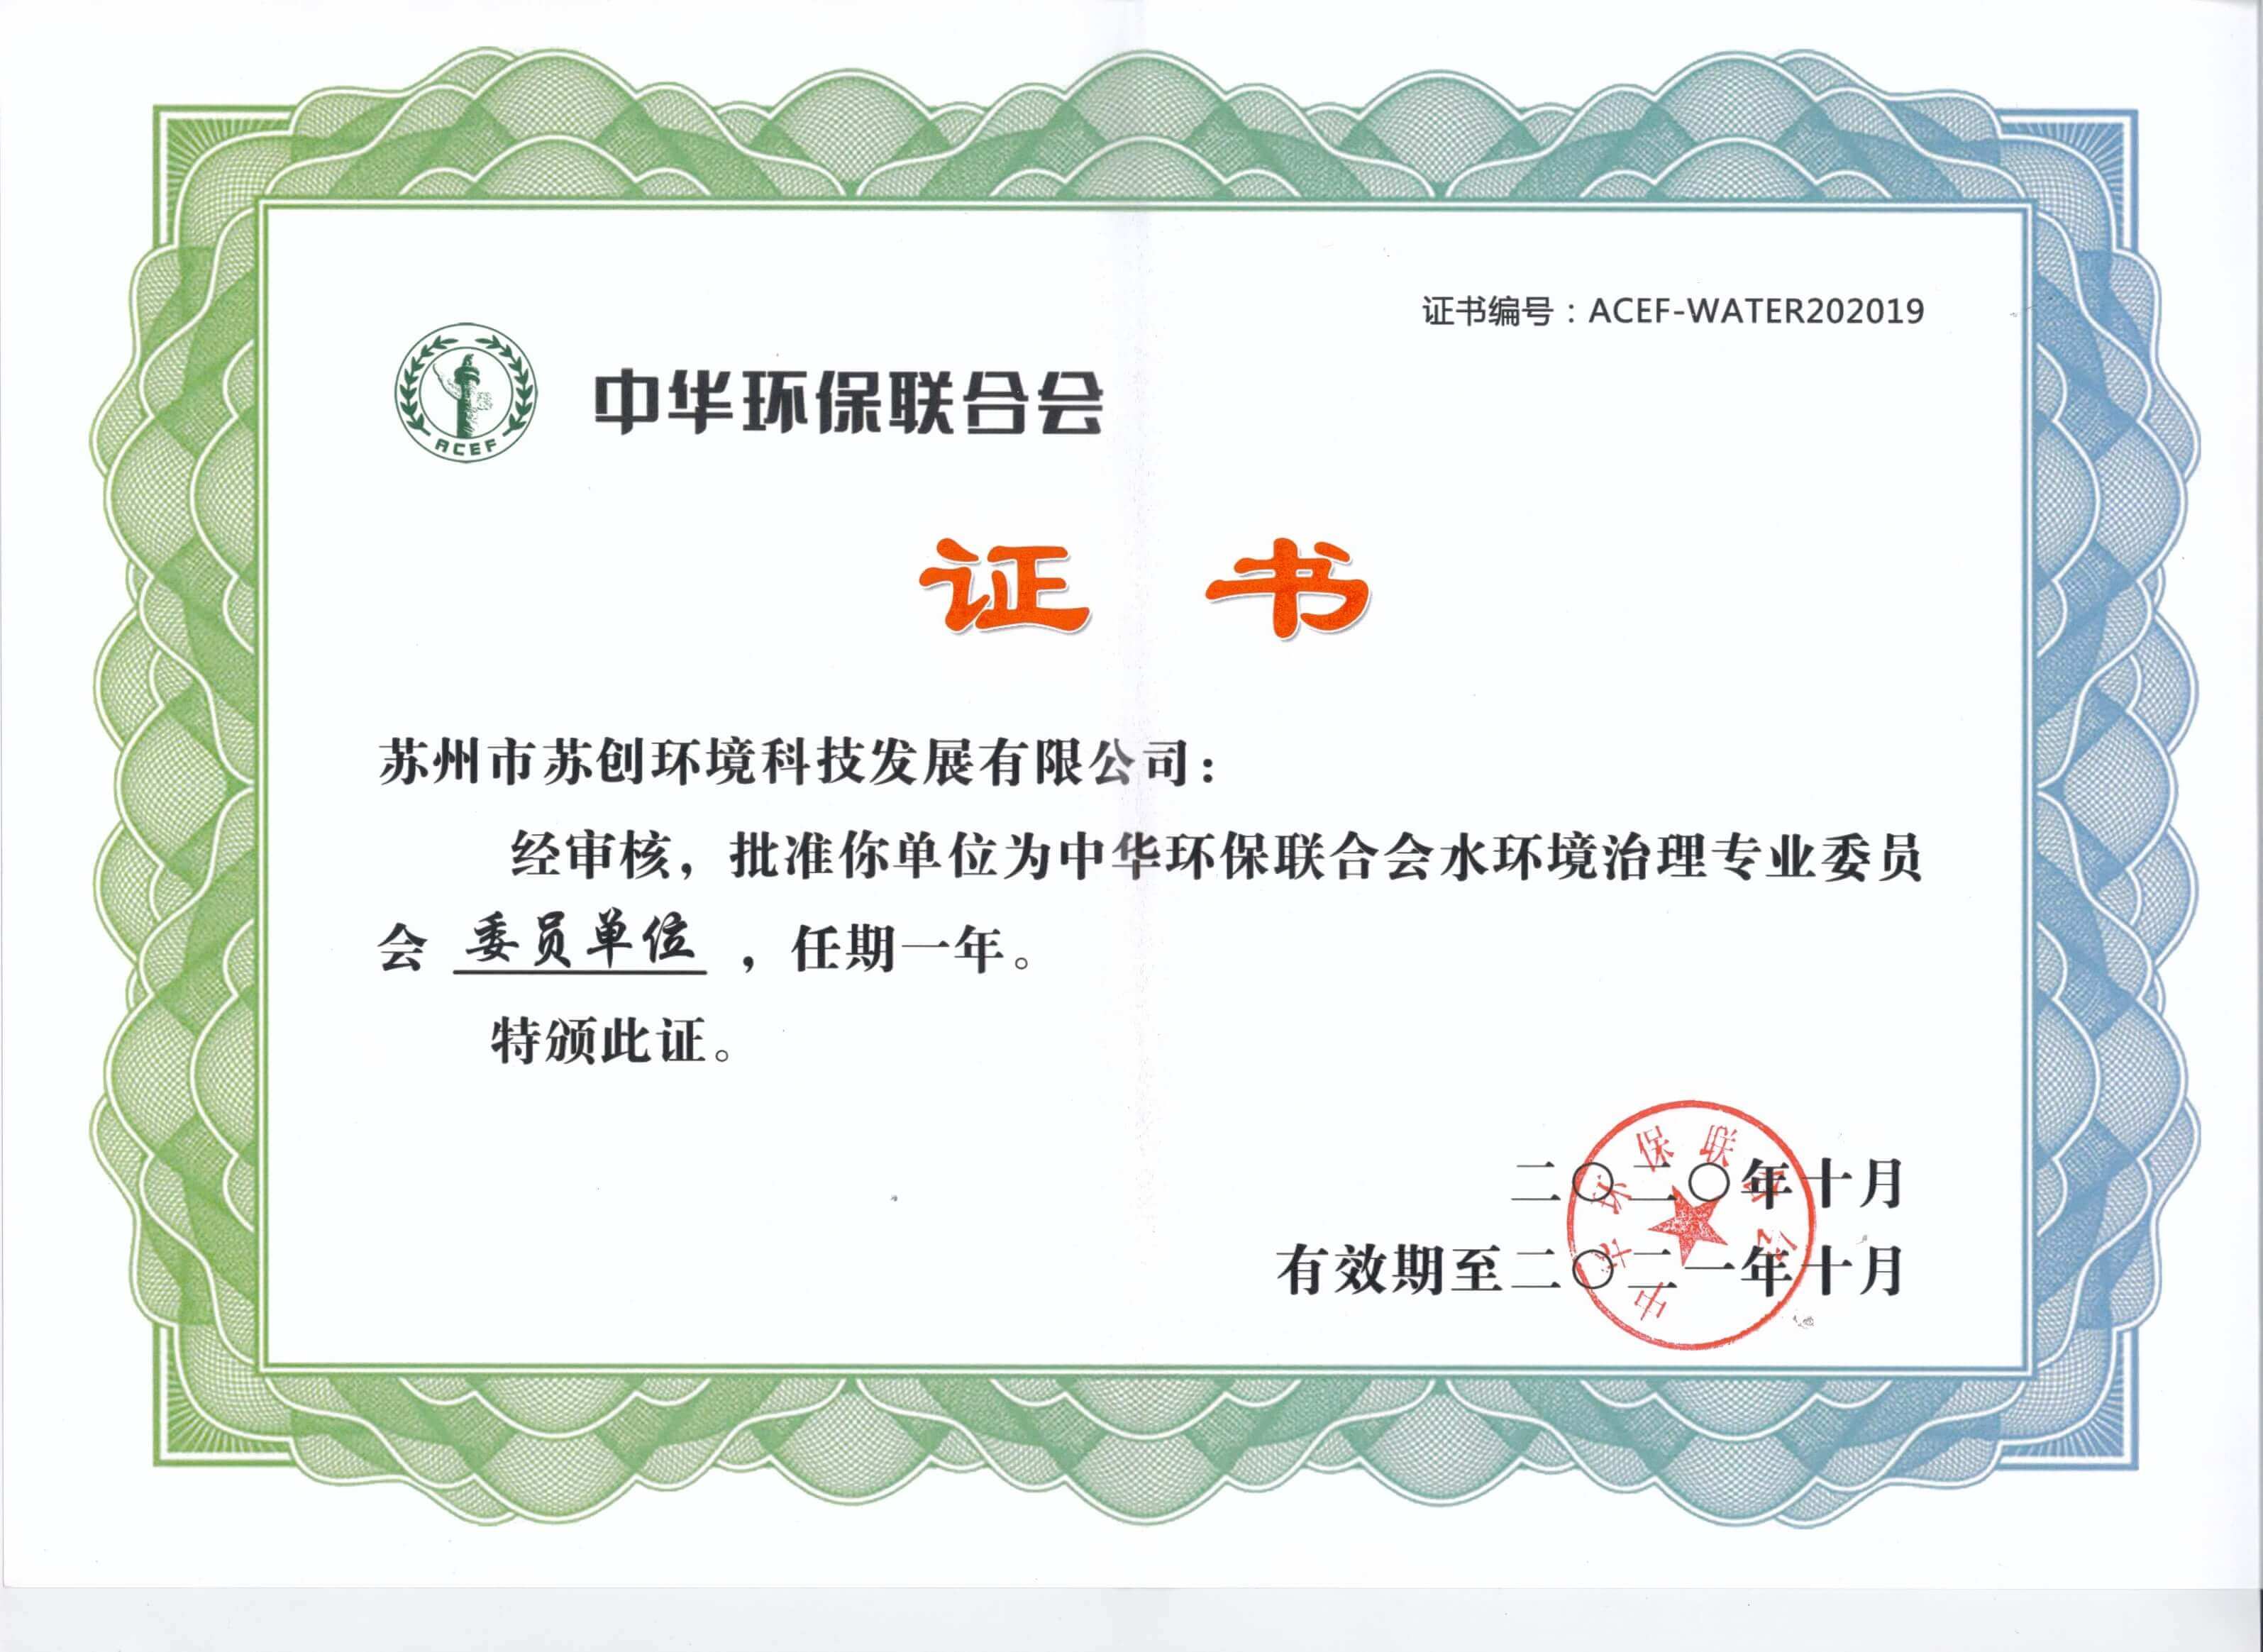 中华环保联合会水环境治理专业委员会